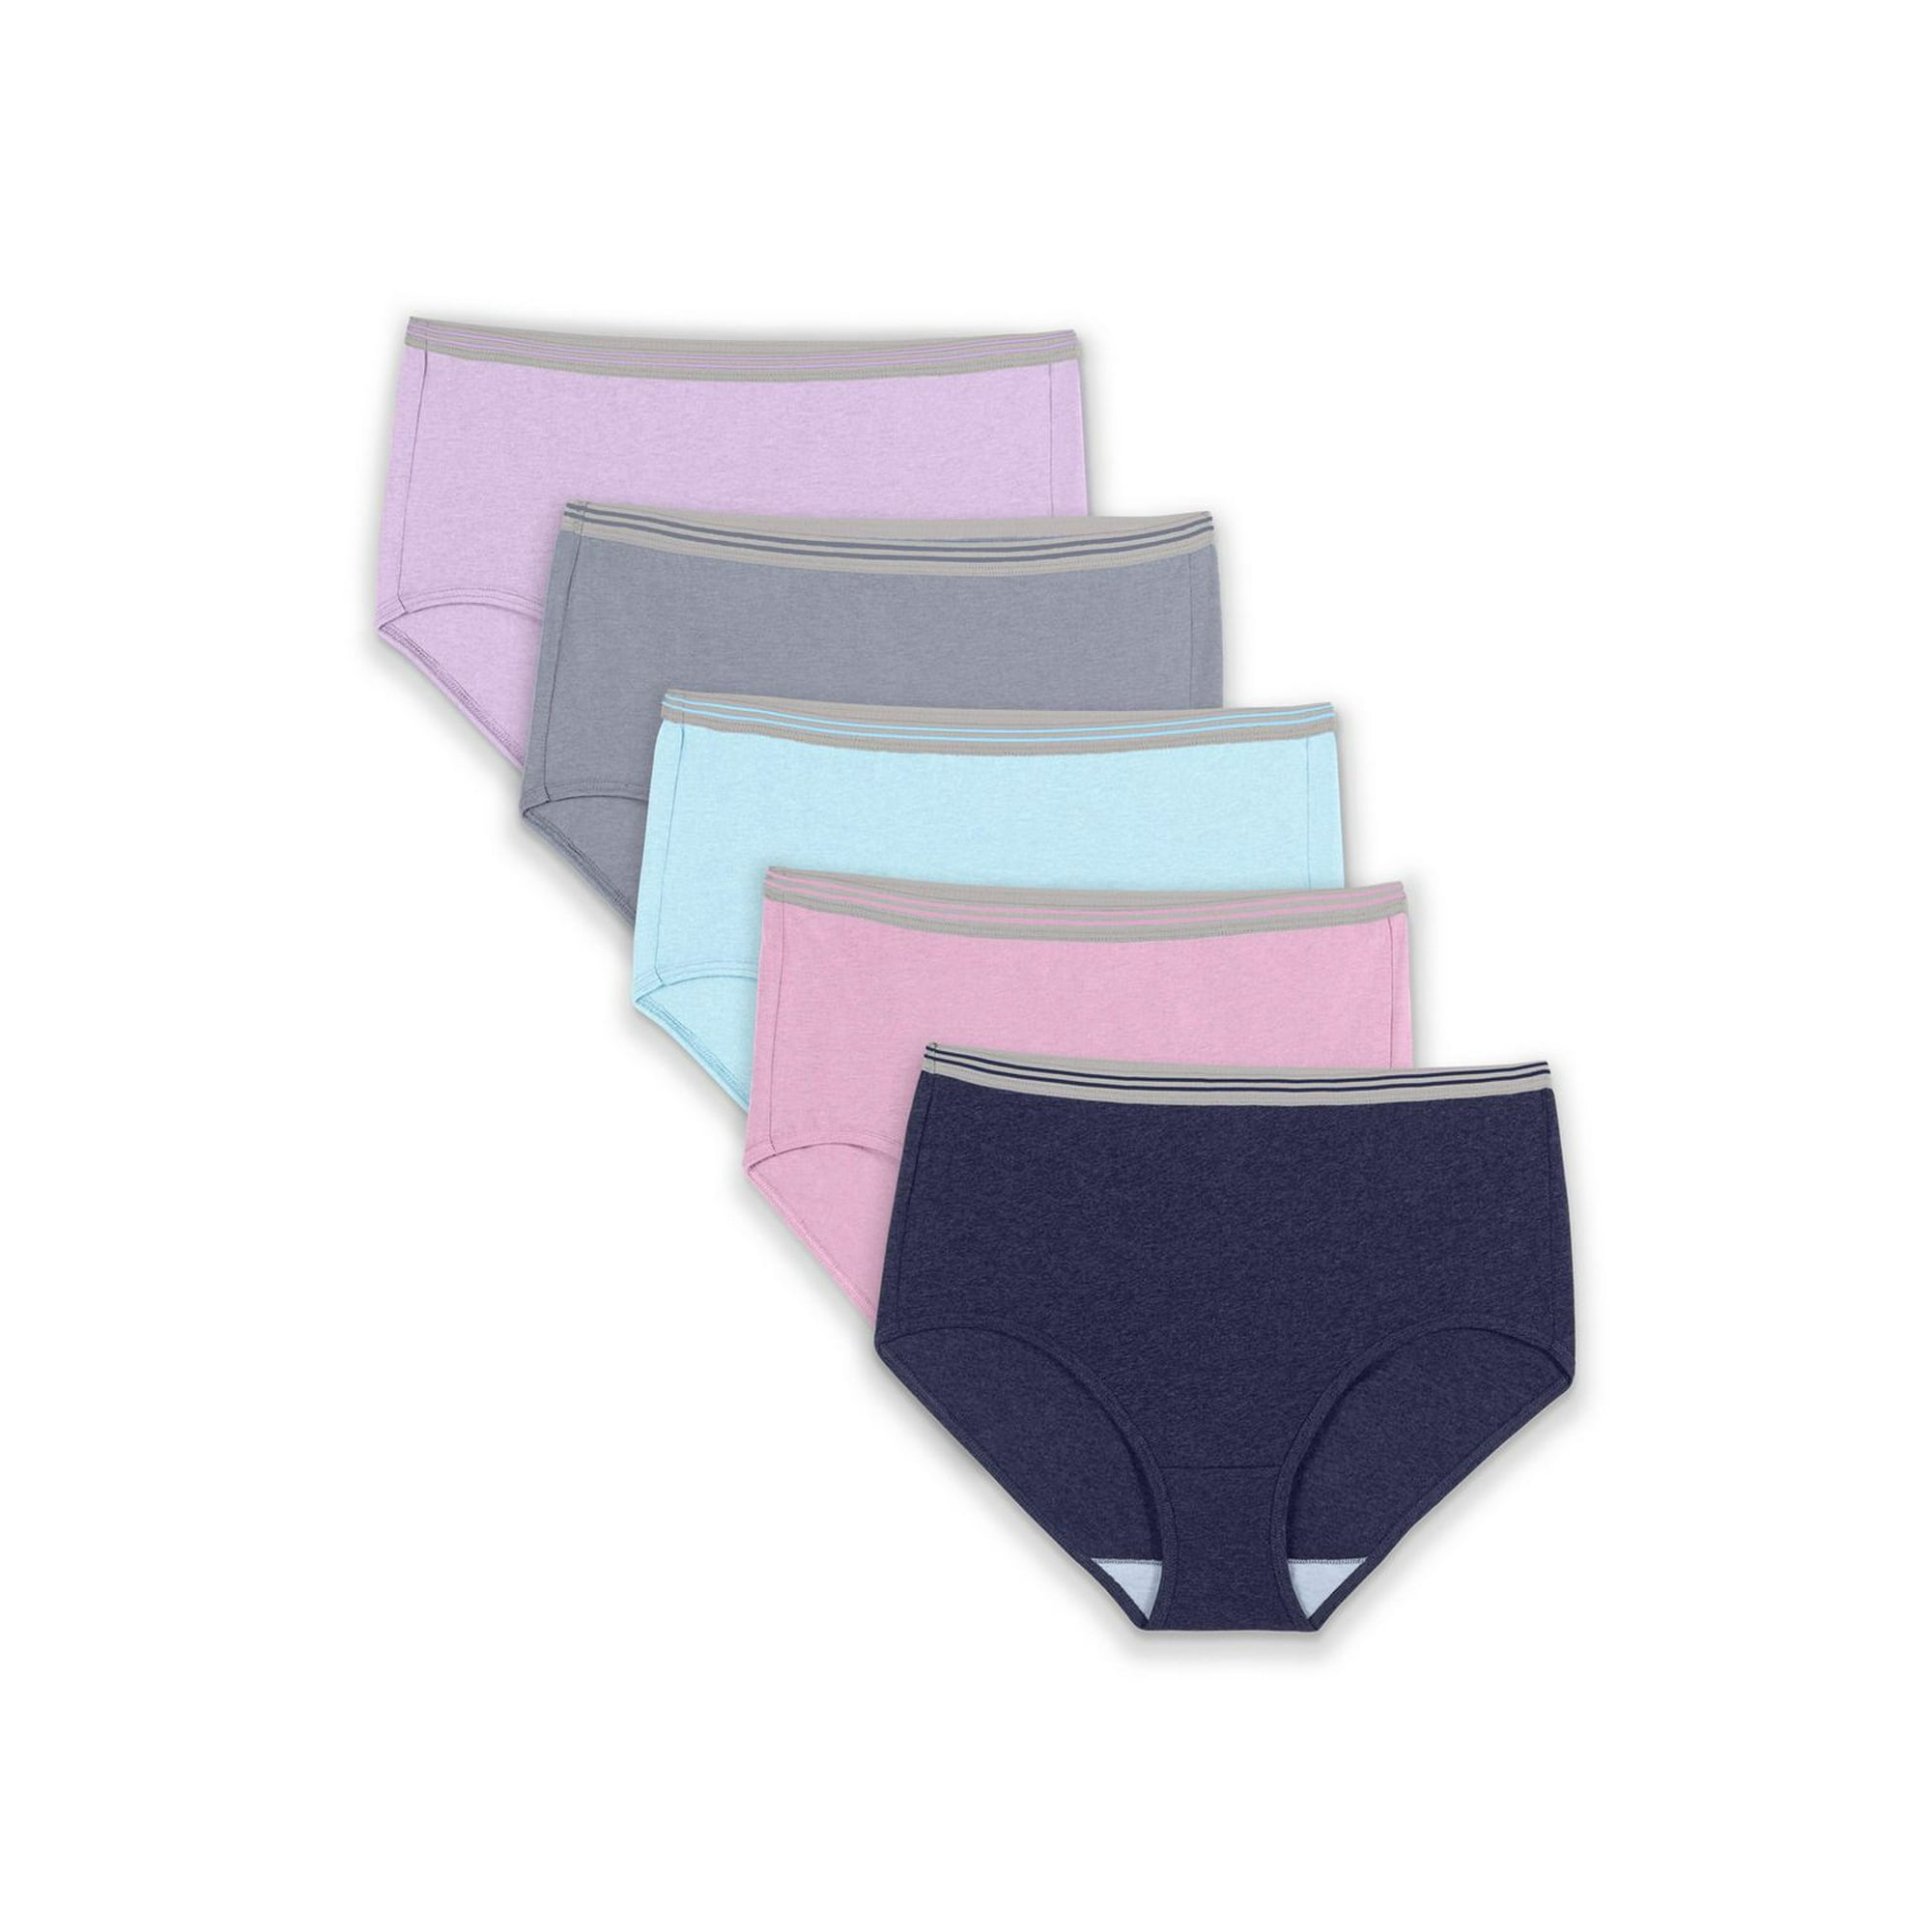 4pcs/lot Women's panties underwear waist Cotton Lady briefs plus